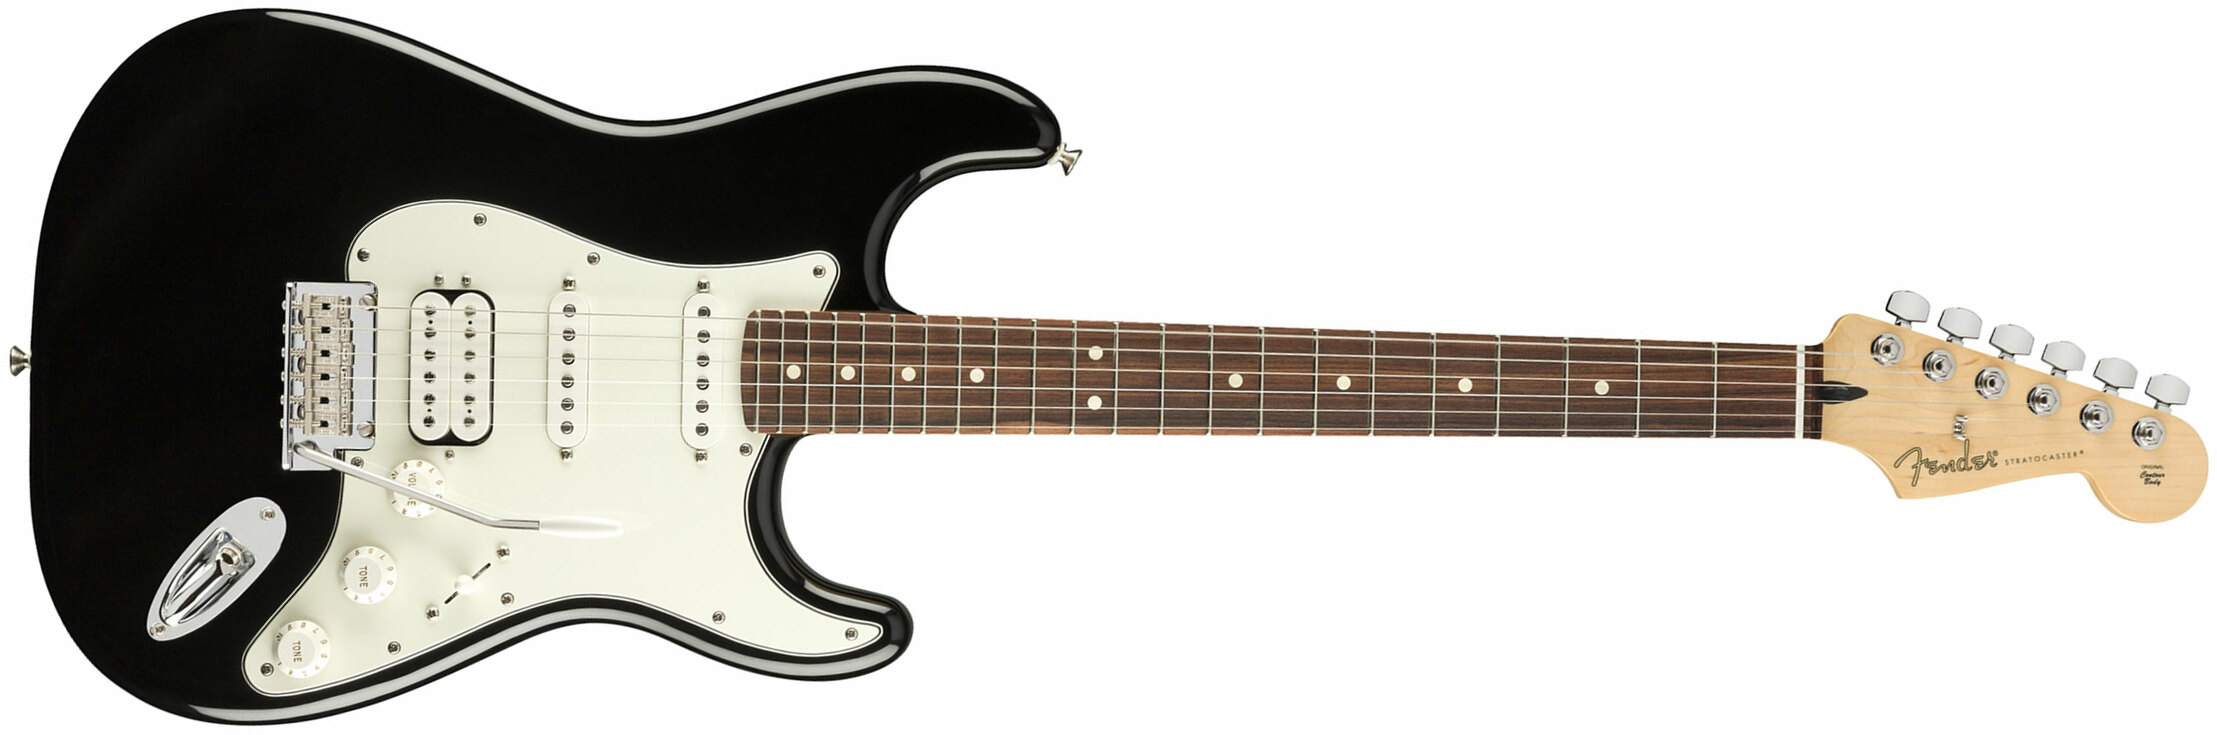 Fender Strat Player Mex Hss Pf - Black - Guitare Électrique Forme Str - Main picture